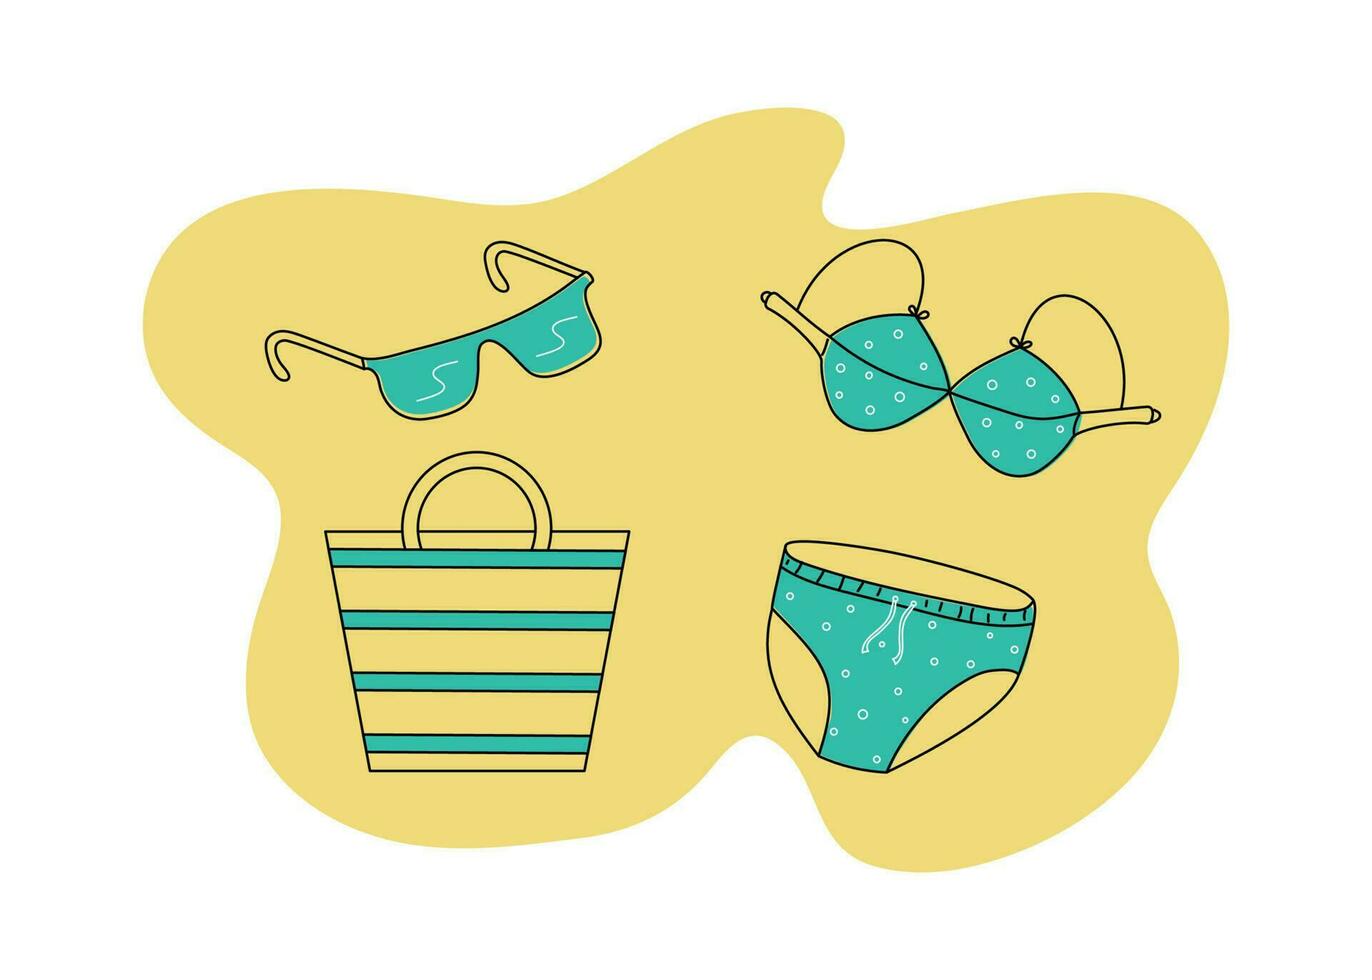 zwempak , zonnebril , strand tas. ondergoed voor zonnen en zwemmen. zomer kleding. vector illustratie.